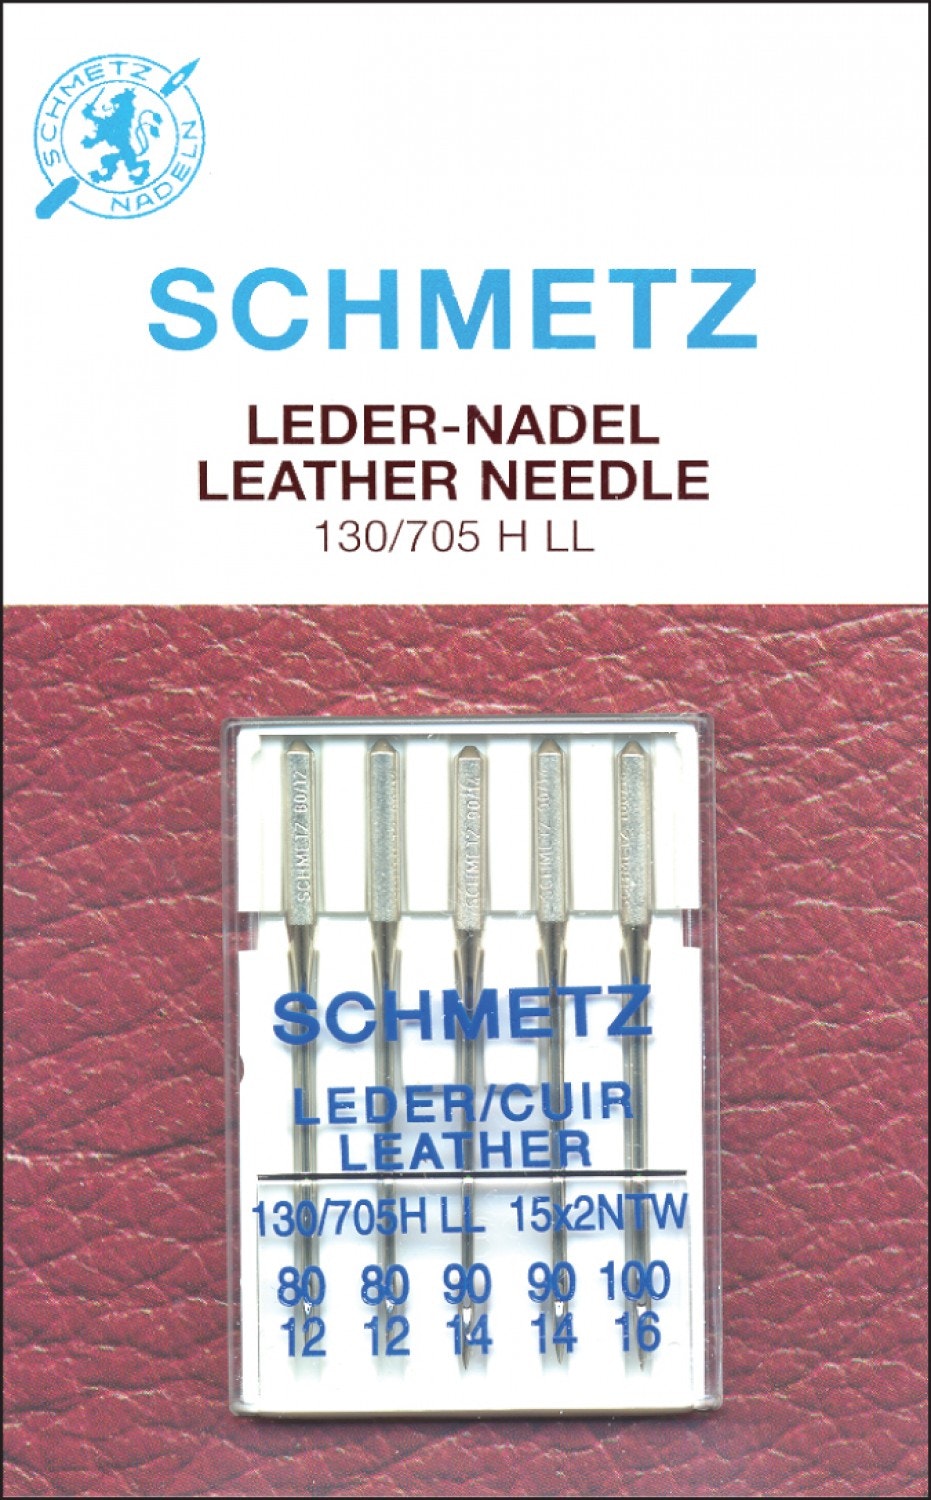 Schmetz-skinn nål str. 80-90-100 - Lappelykke